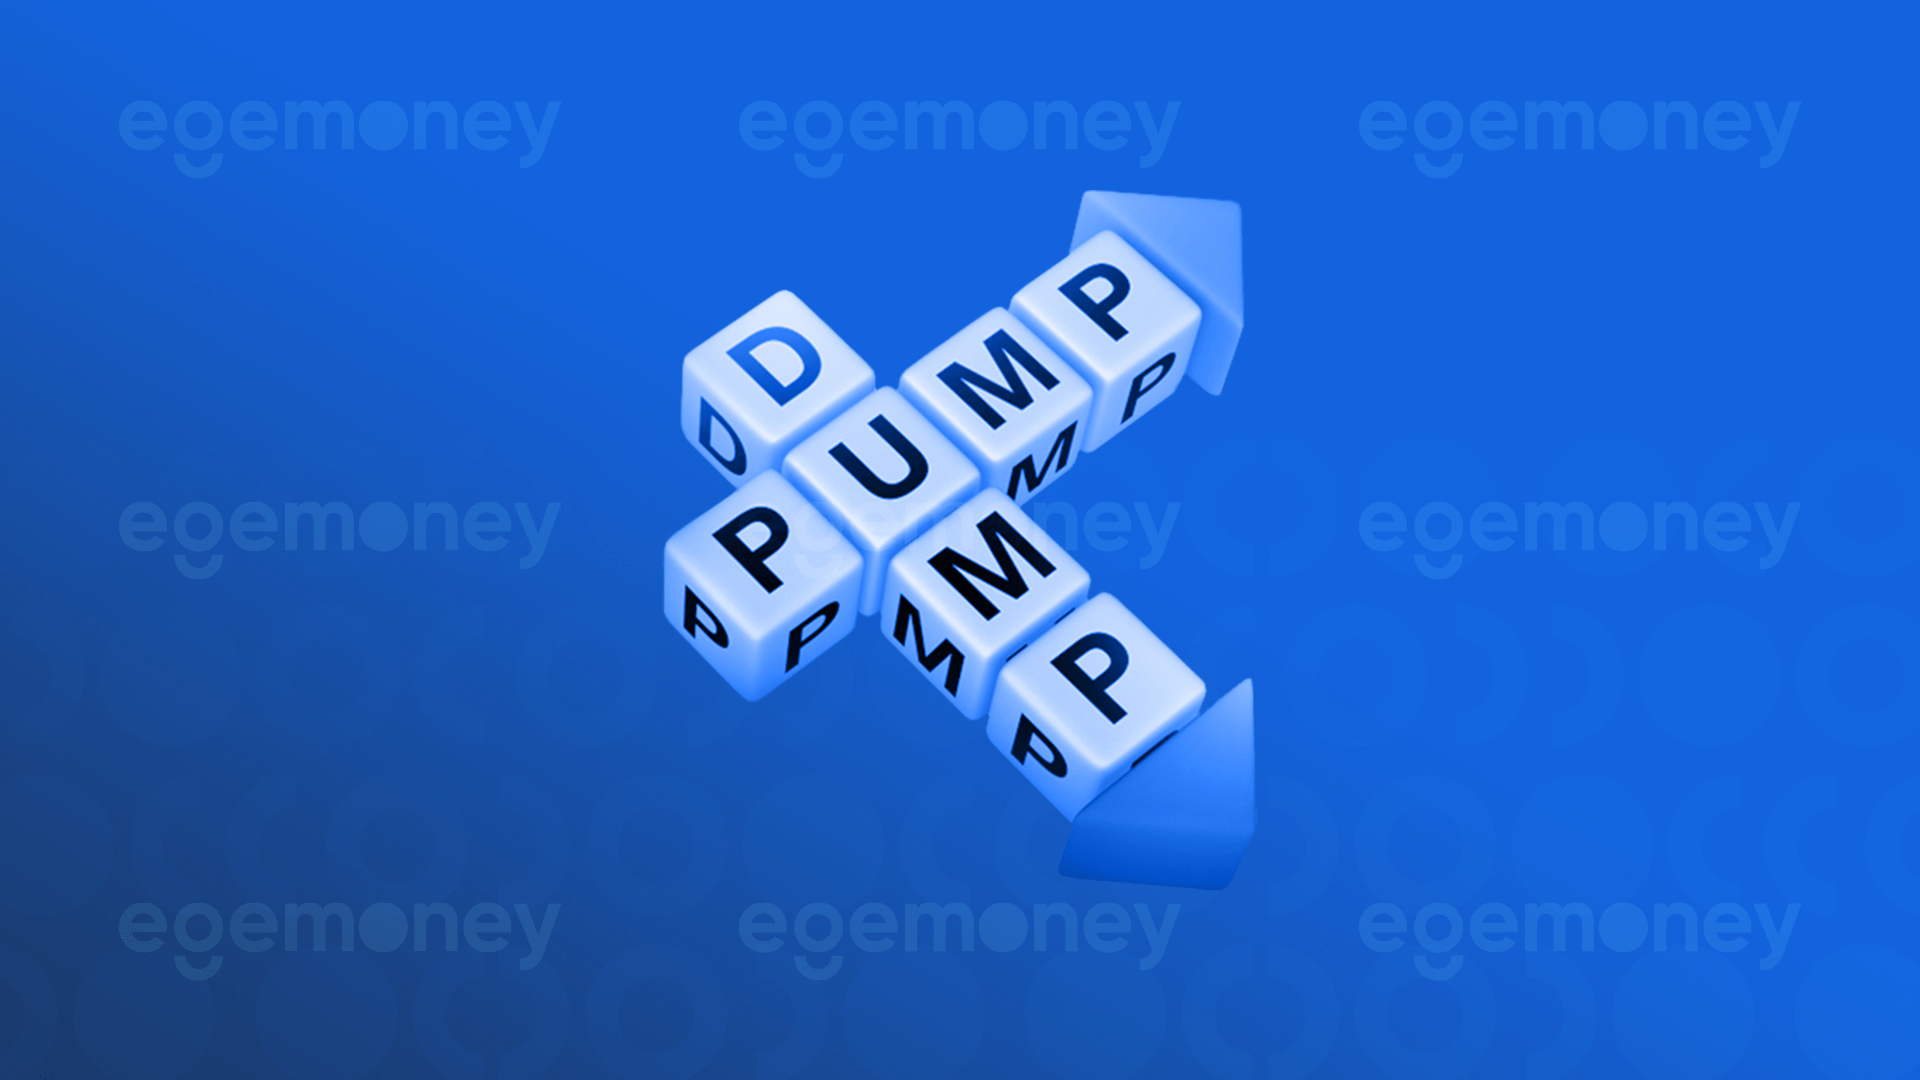 Pump Nedir? Dump Nedir?